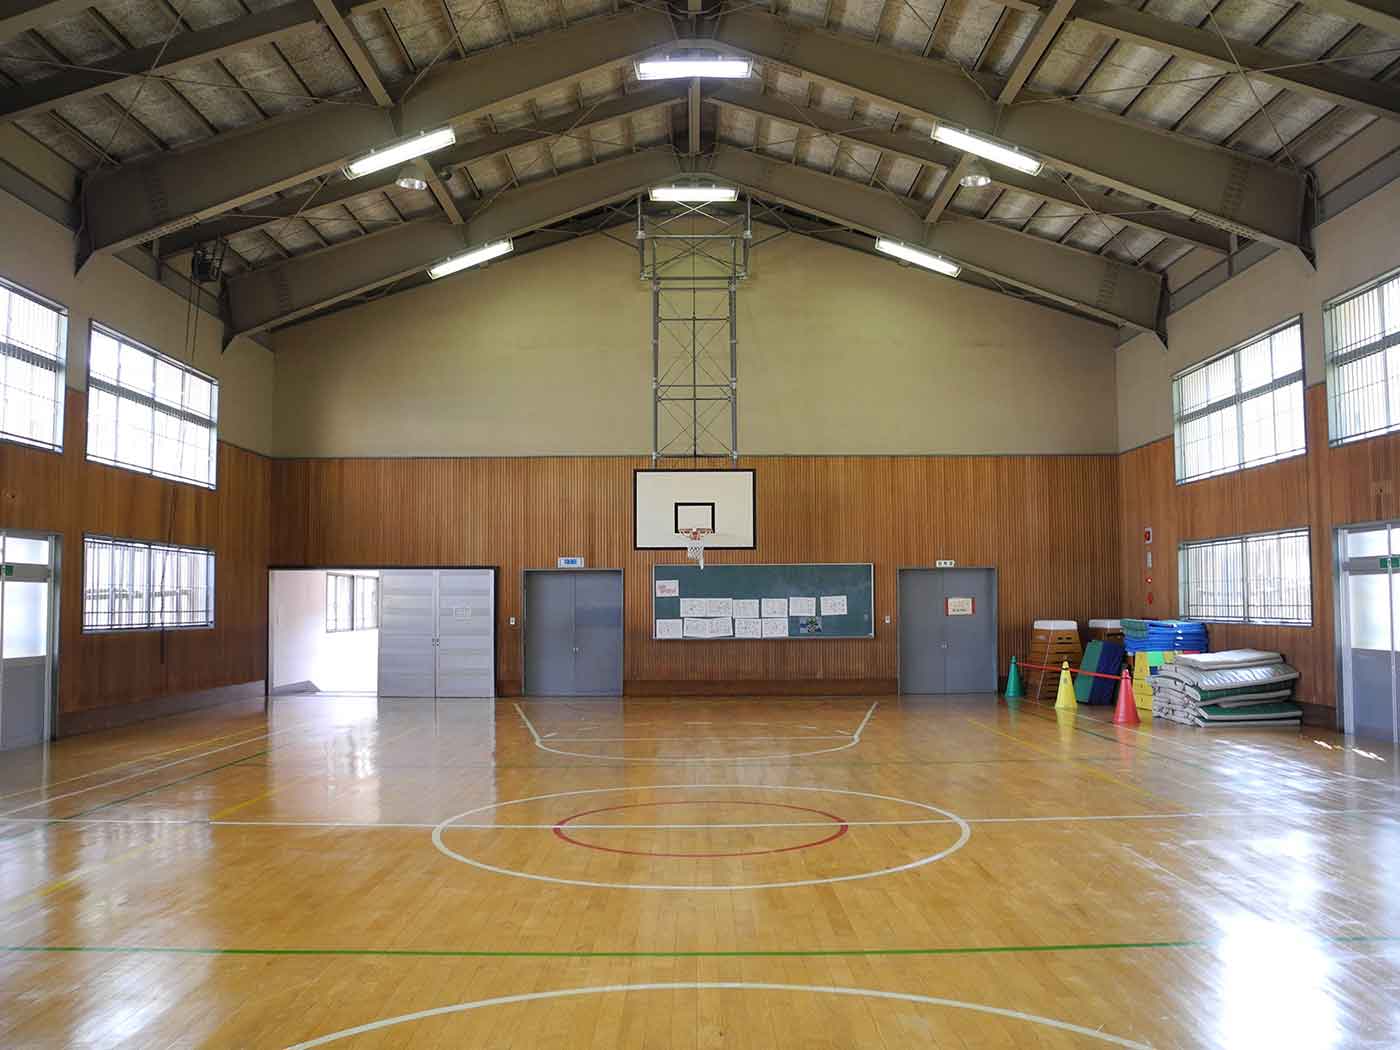 Elementary school gym